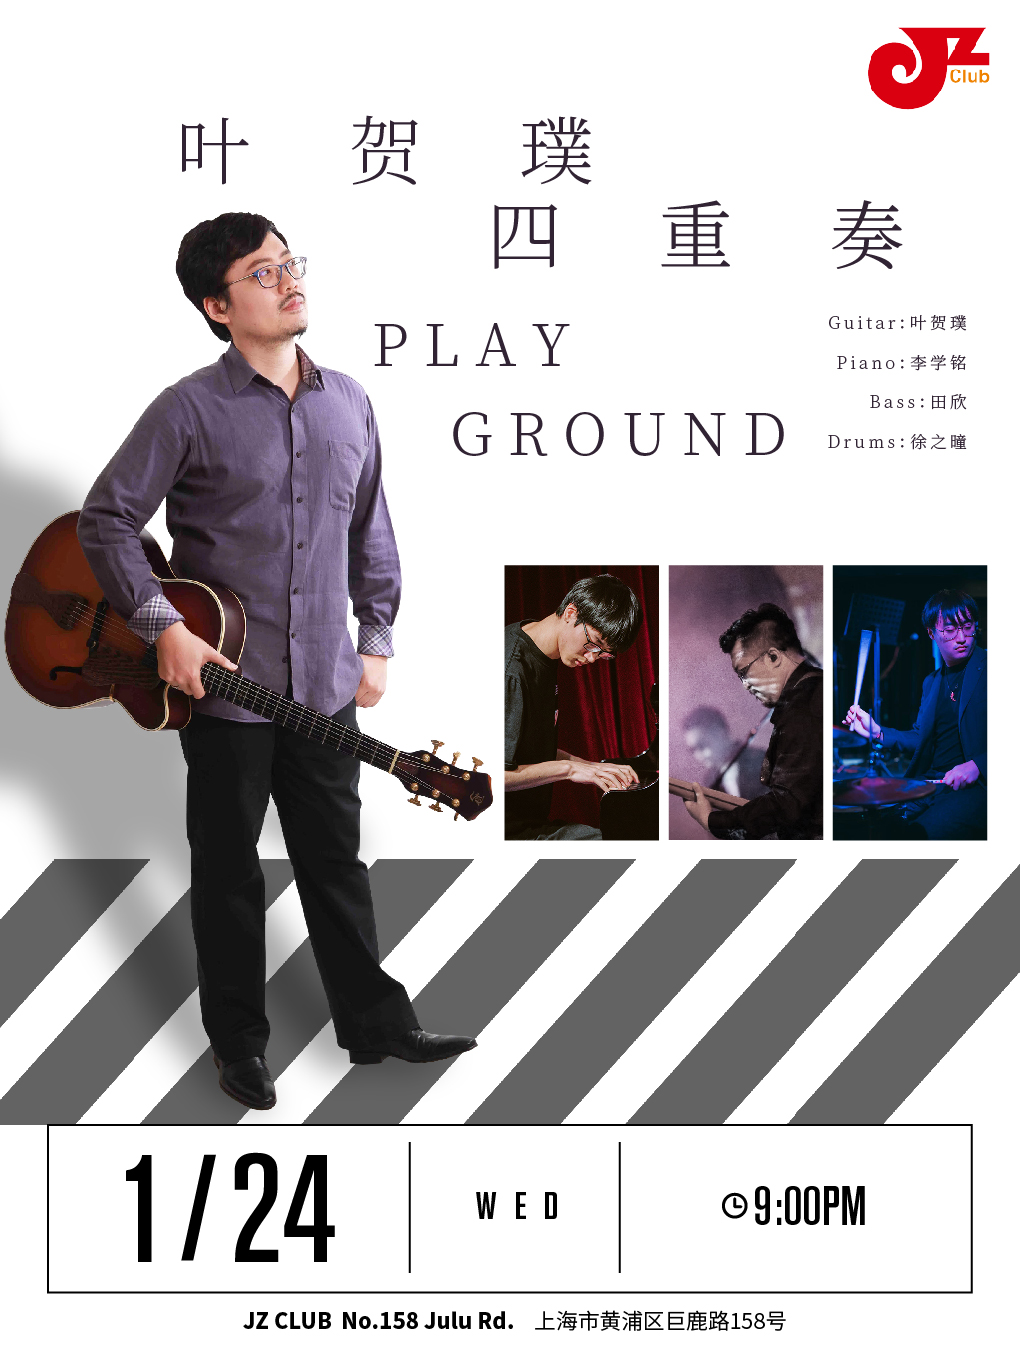 上海【JZ Club】叶贺璞四重奏-Play Ground